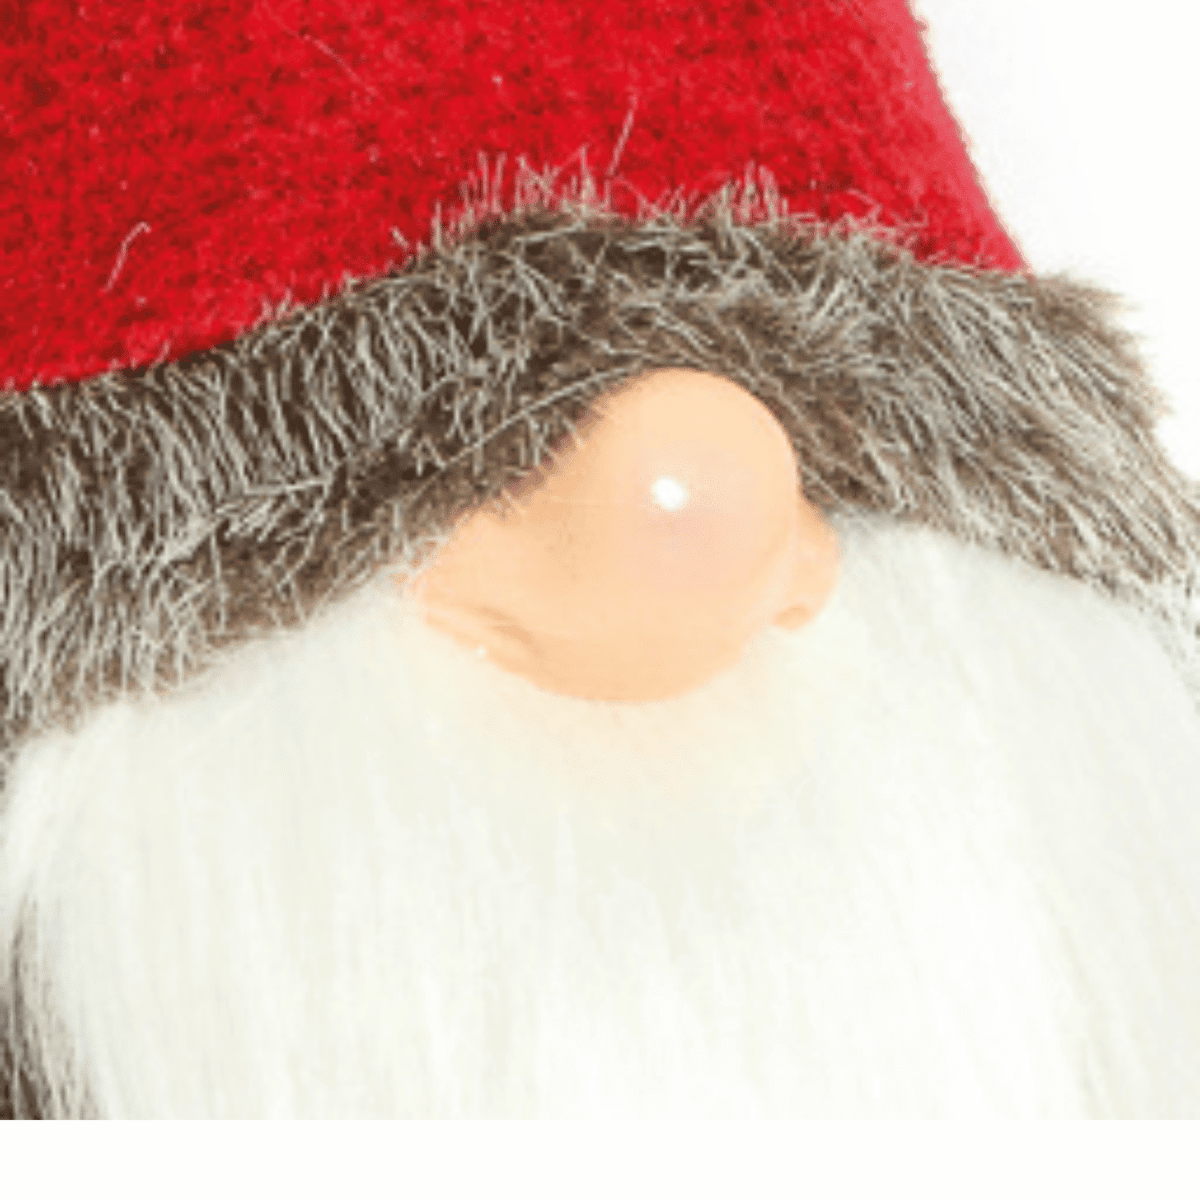 gnomo-walter-elfi-gnomi-pupazzi-natale-decorazioni-natalizie-feltro-tirolese-dettaglio